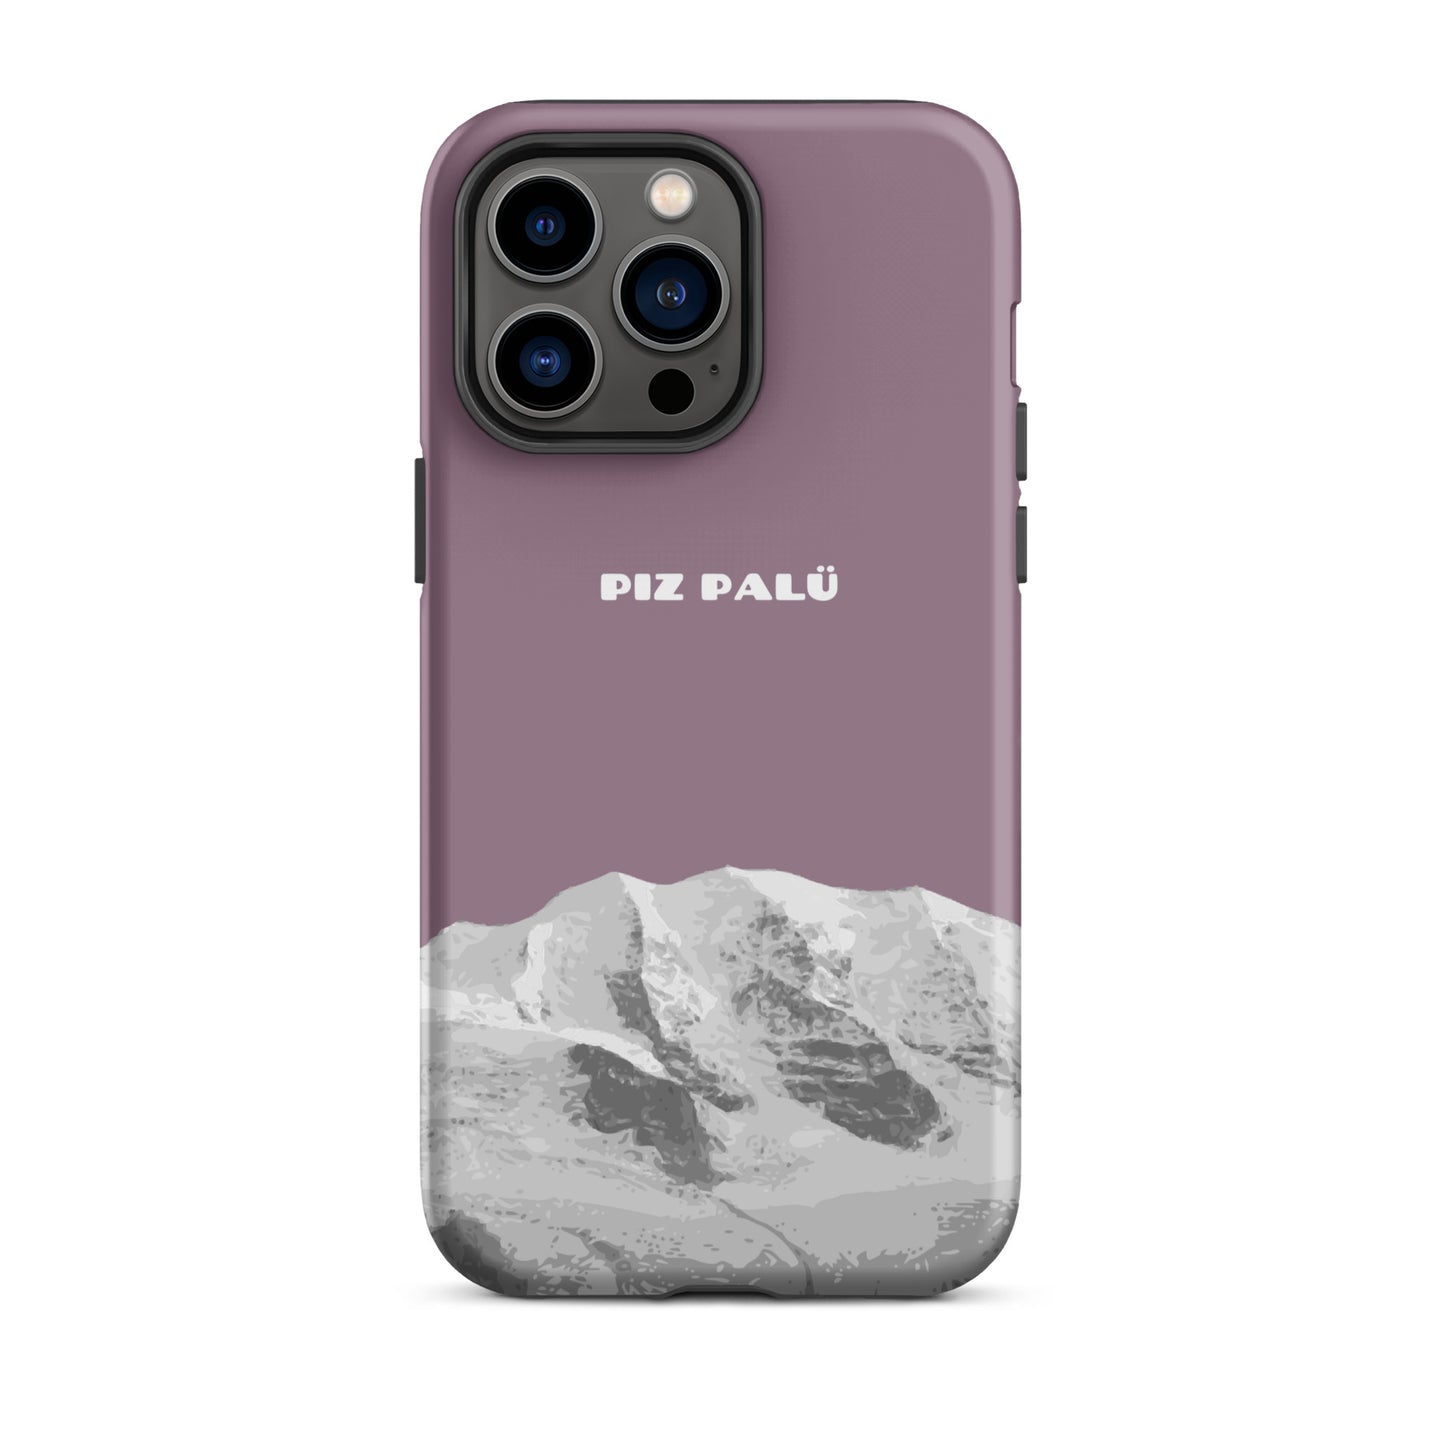 Hülle für das iPhone 14 Pro Max von Apple in der Farbe Pastellviolett, dass den Piz Palü in Graubünden zeigt.